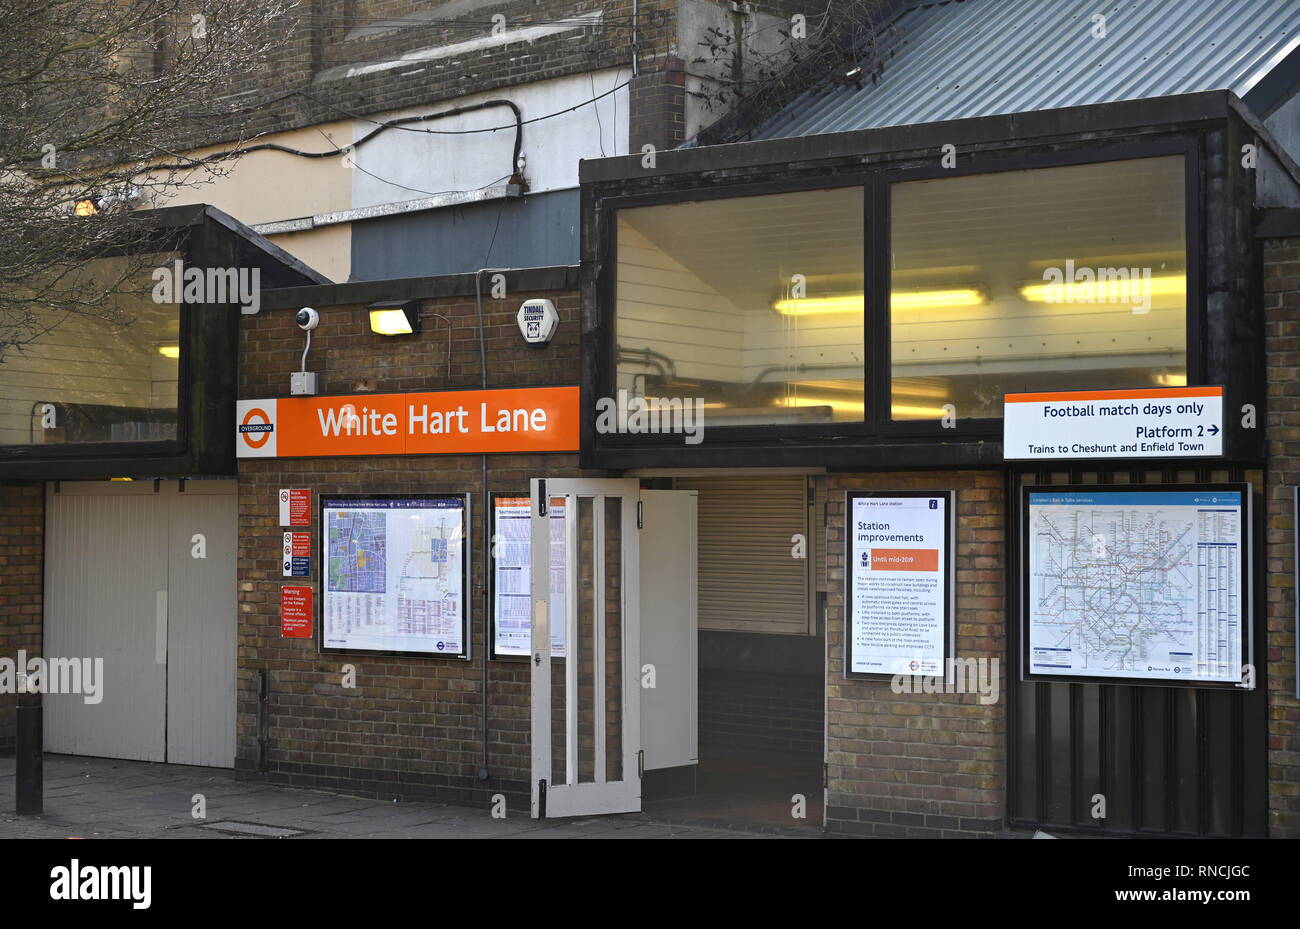 Tottenham, Londres, Reino Unido - El White Hart Lane estación ferroviaria utilizada por los aficionados al fútbol van a Spurs coincide con fotografía tomada por Simon Dack Foto de stock